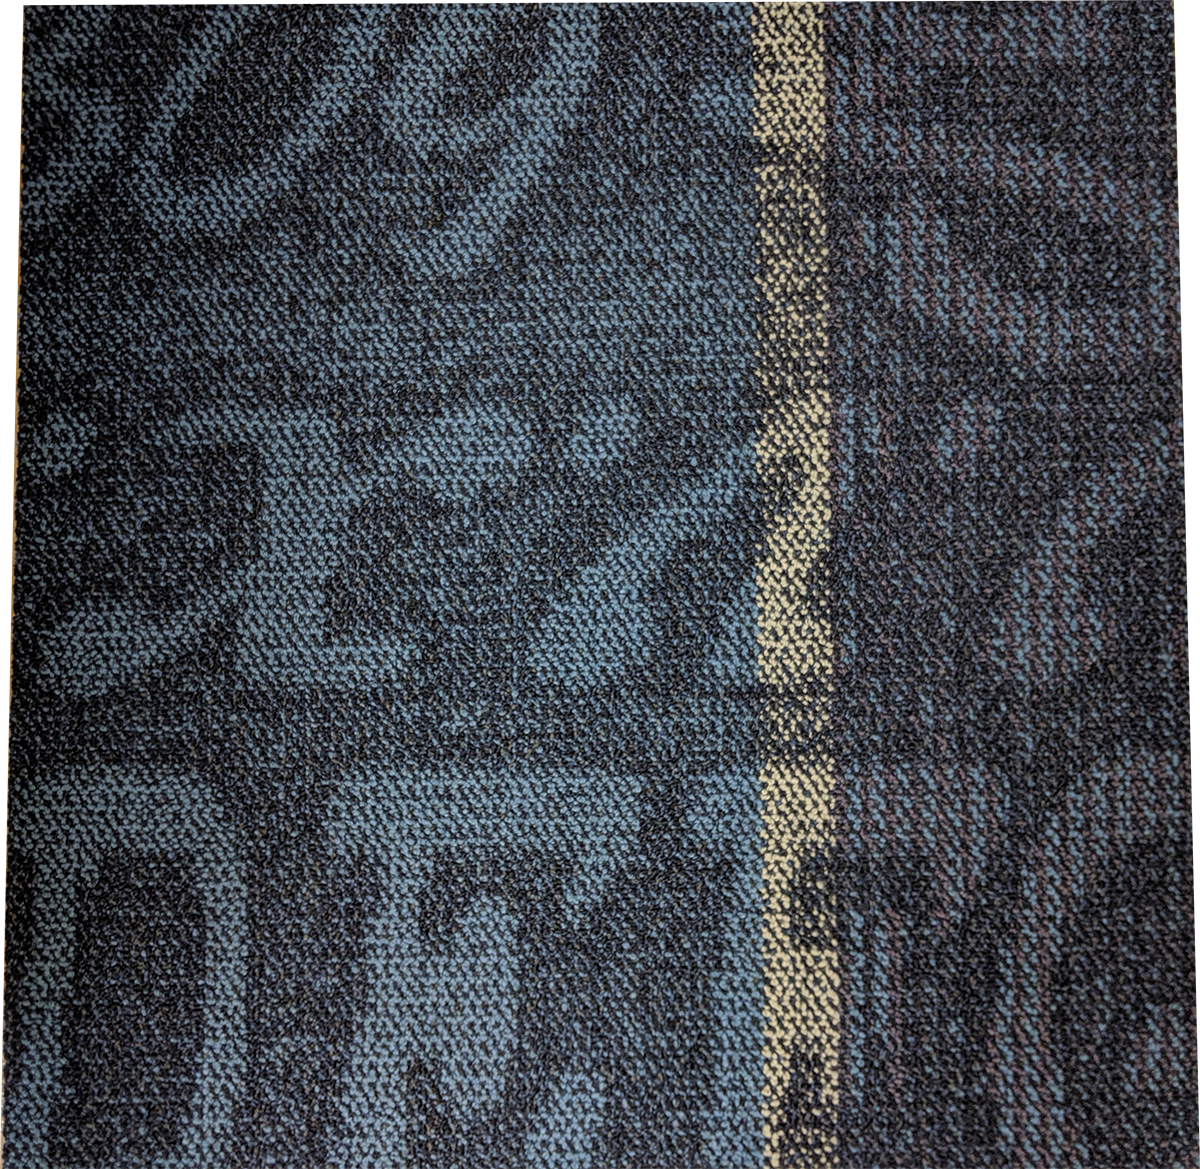 Shaw Navy Carpet Tile-24"x 24"(12 Tiles/case, 48 sq. ft./case)